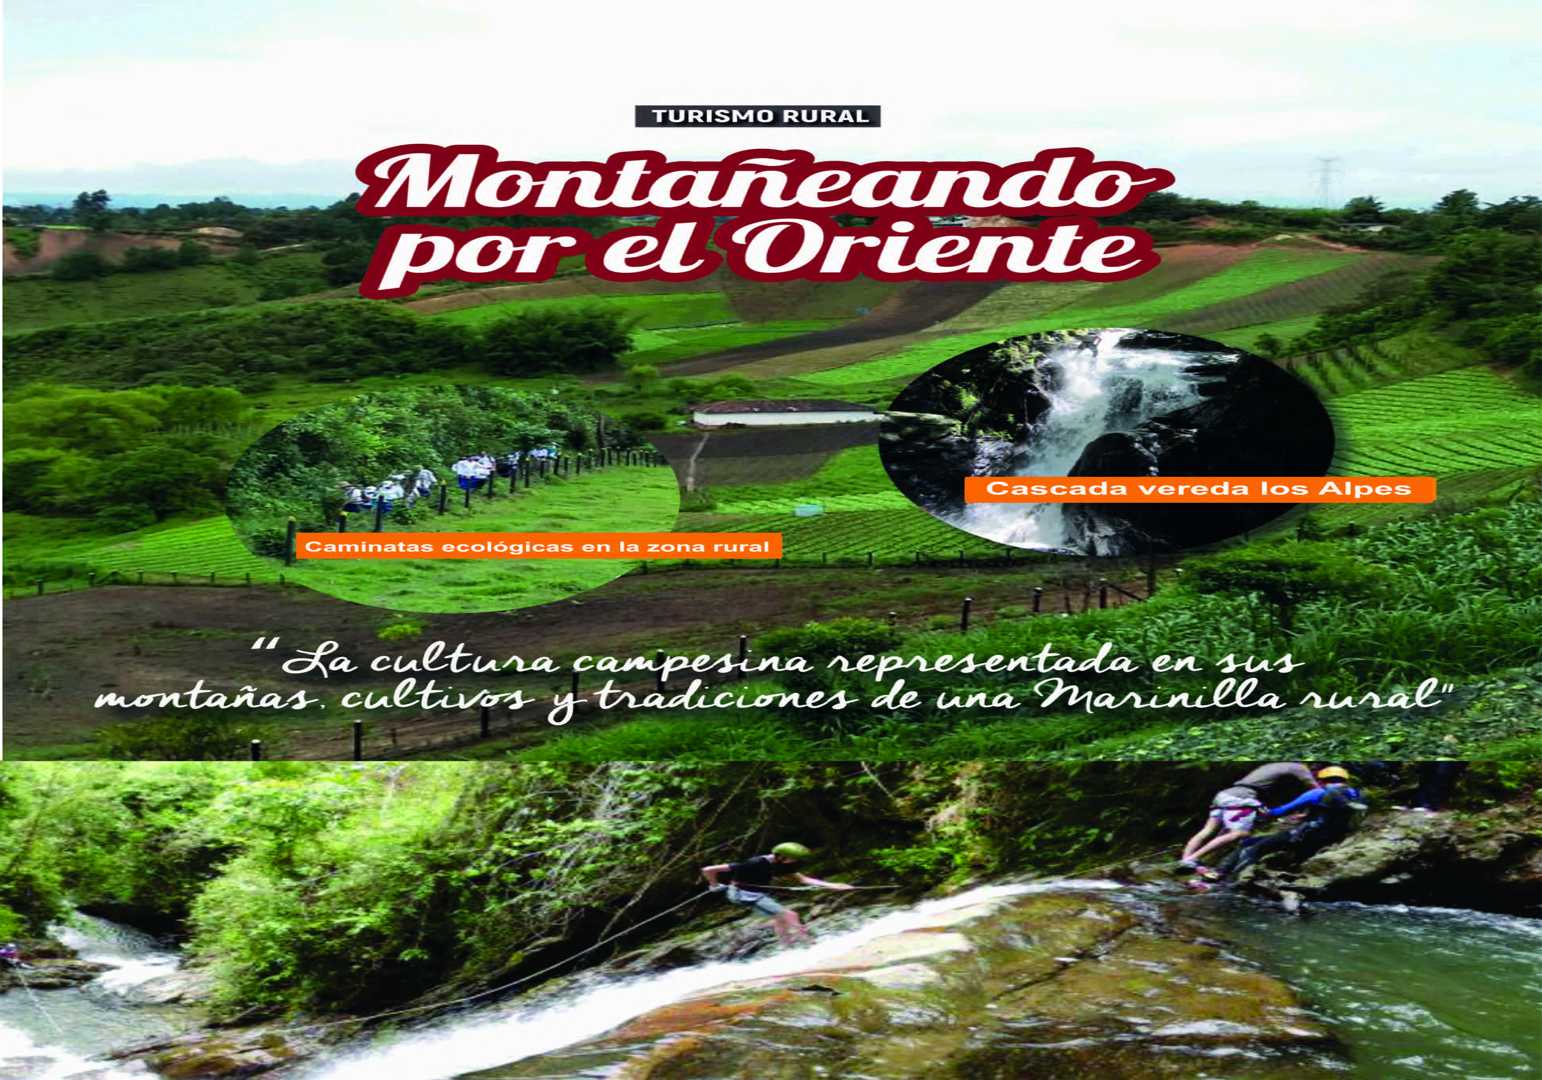 Montañeando - Marinilla Antioquia